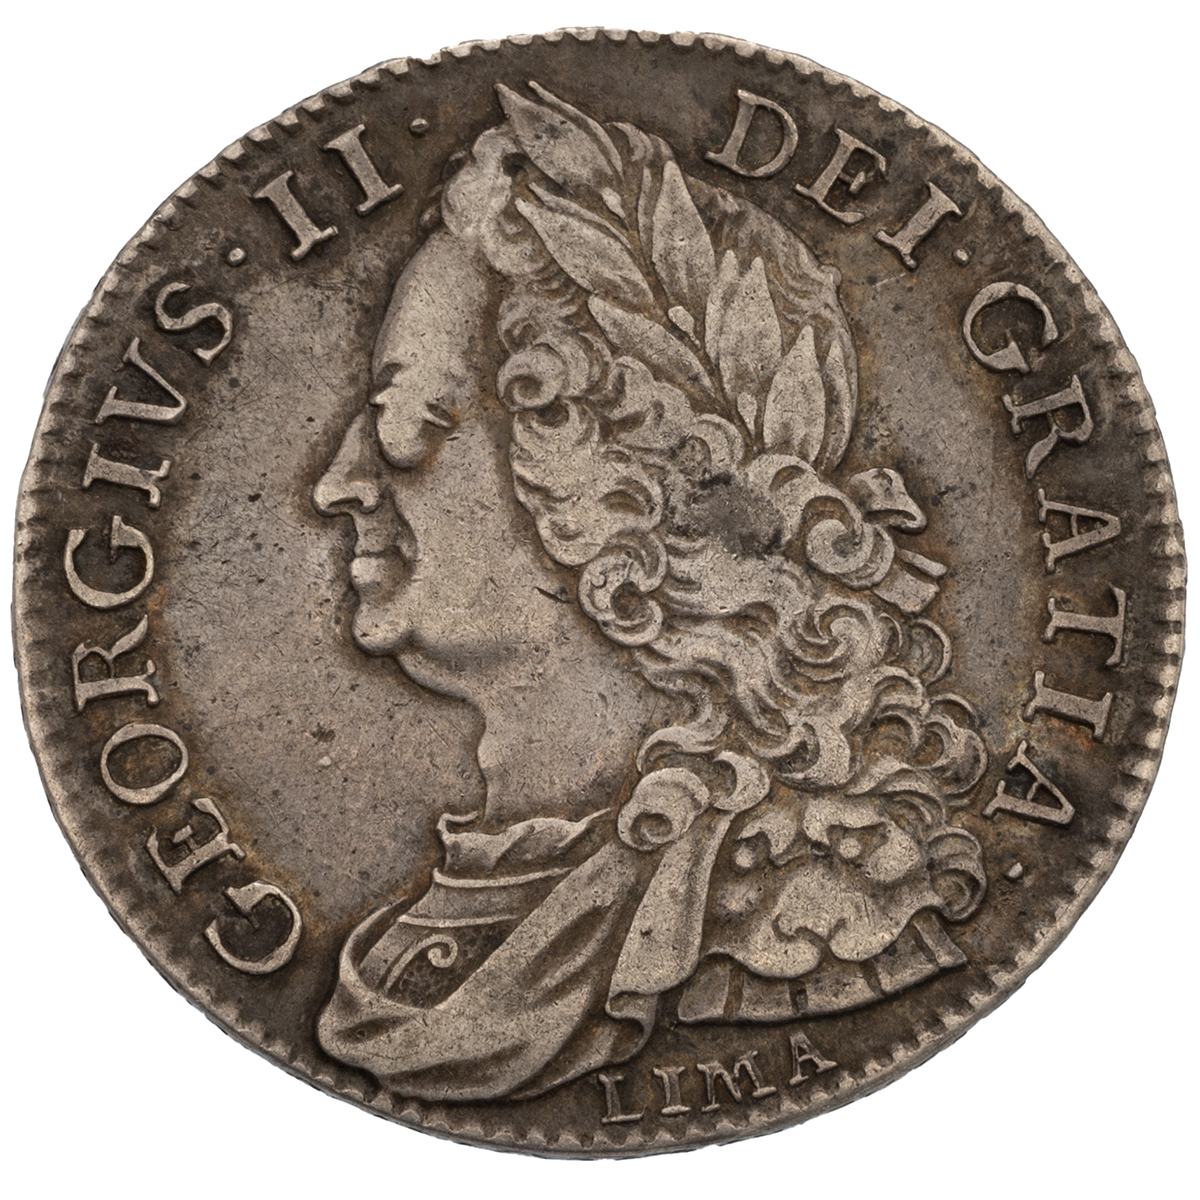 1746 King George II silver 'LIMA' Halfcrown with 'DECIMO NONO' edge (S 3695A, Bull 1688, ESC 606)...